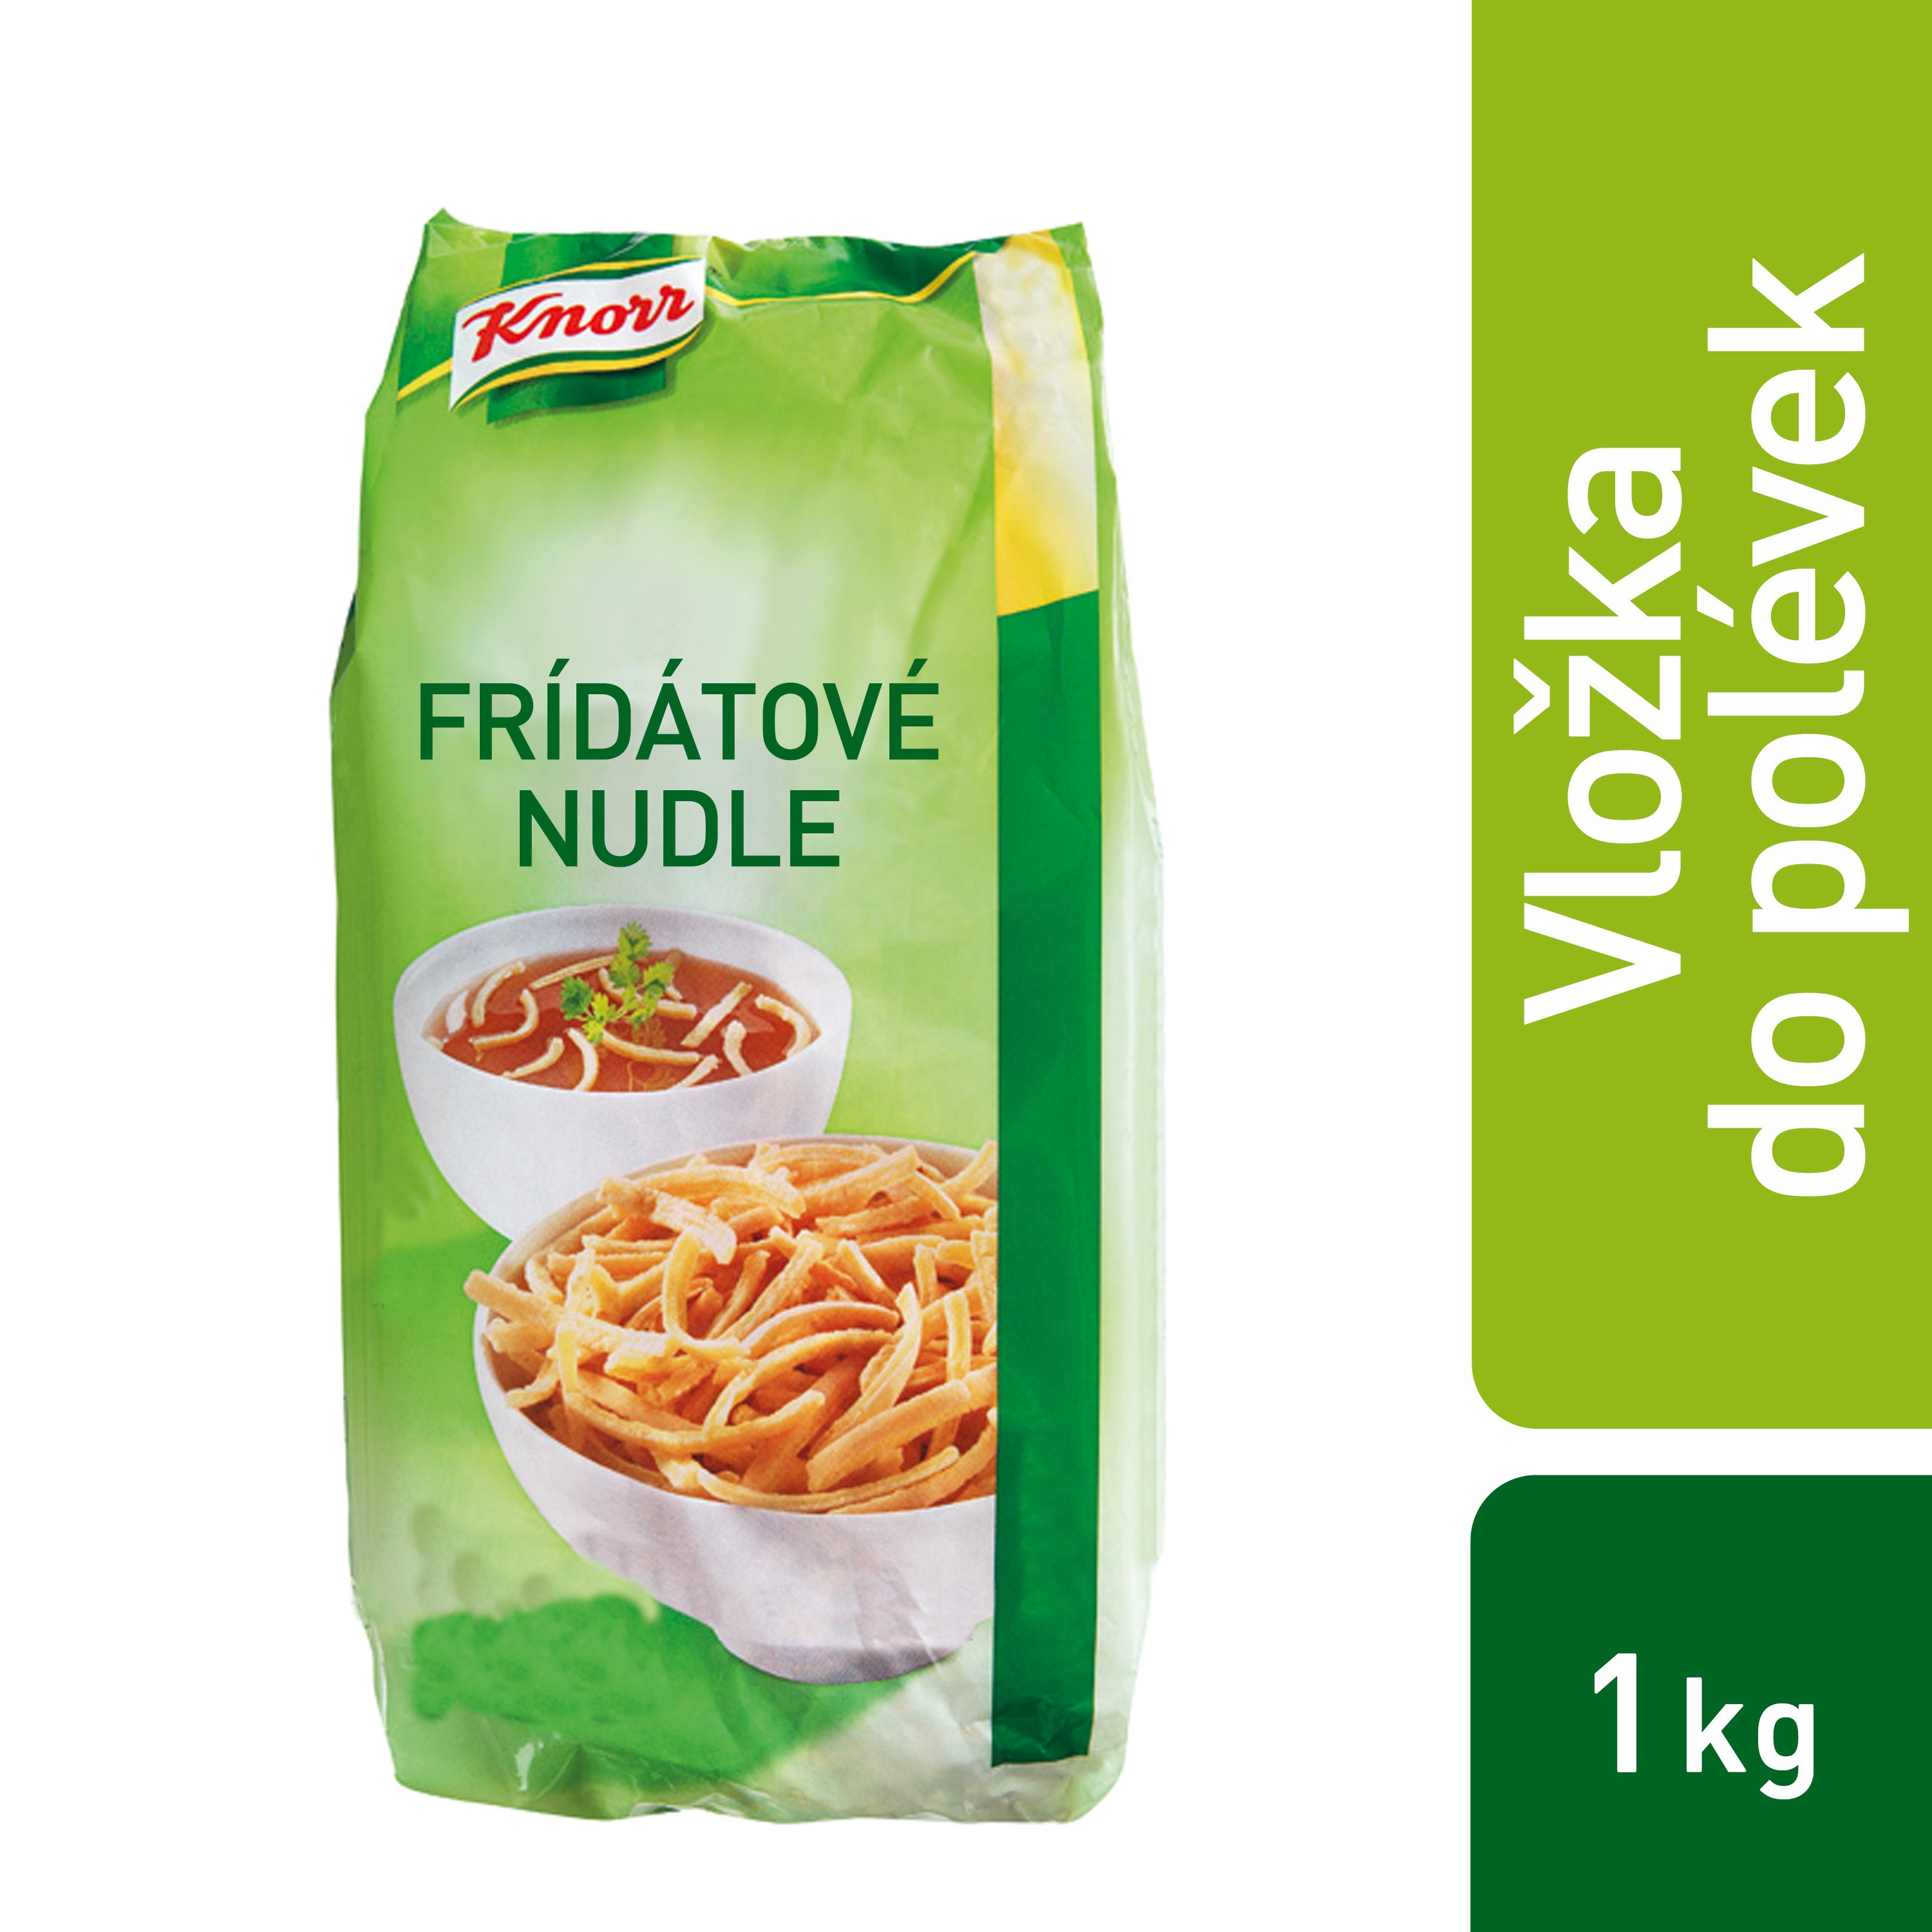 Knorr Fridátové nudle 1 kg - 